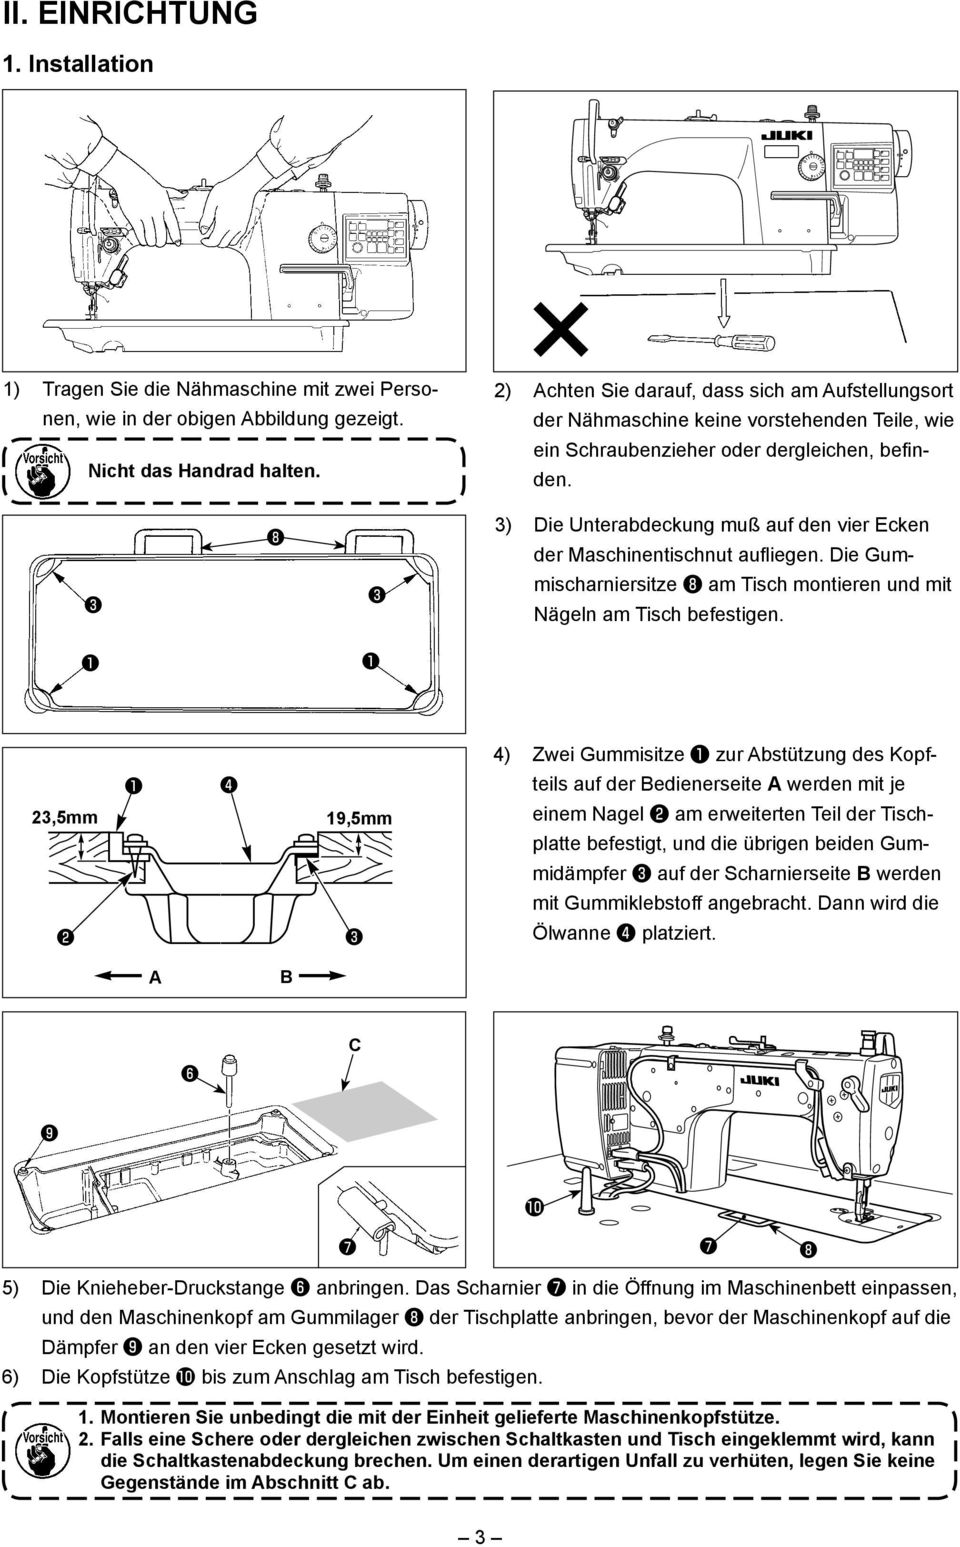 ❽ 3) Die Unterabdeckung muß auf den vier Ecken der Maschinentischnut aufliegen. Die Gum- ❸ ❸ mischarniersitze ❽ am Tisch montieren und mit Nägeln am Tisch befestigen.